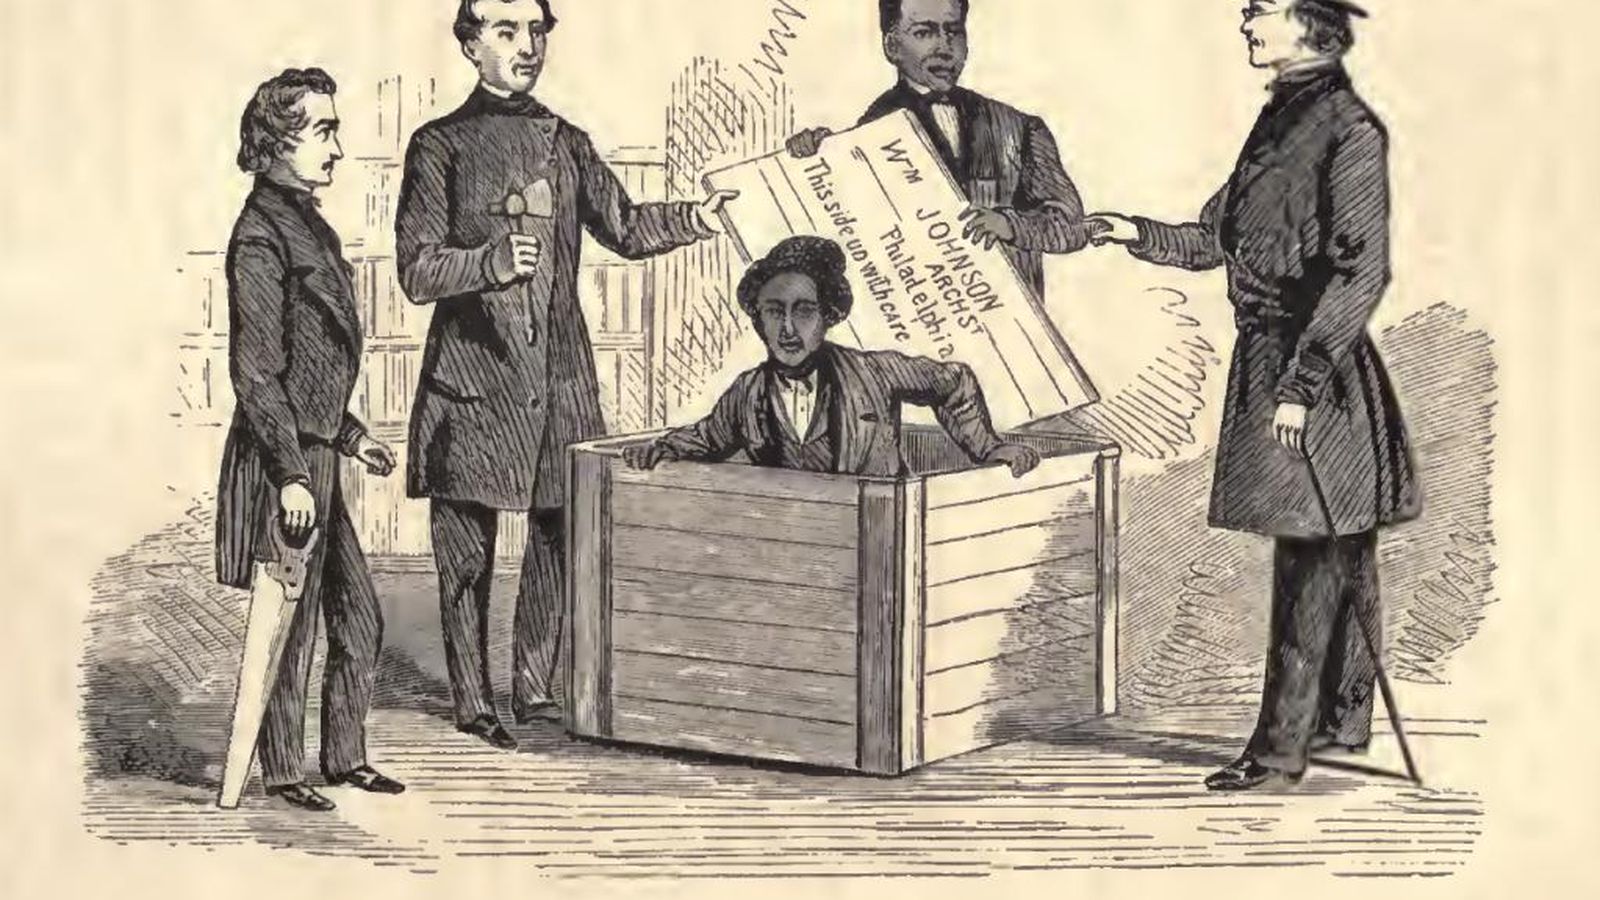 Foto: Grabado que muestra la salida de la caja donde viajó Henry 'Box' Brown en 1849 para huir de la esclavitud